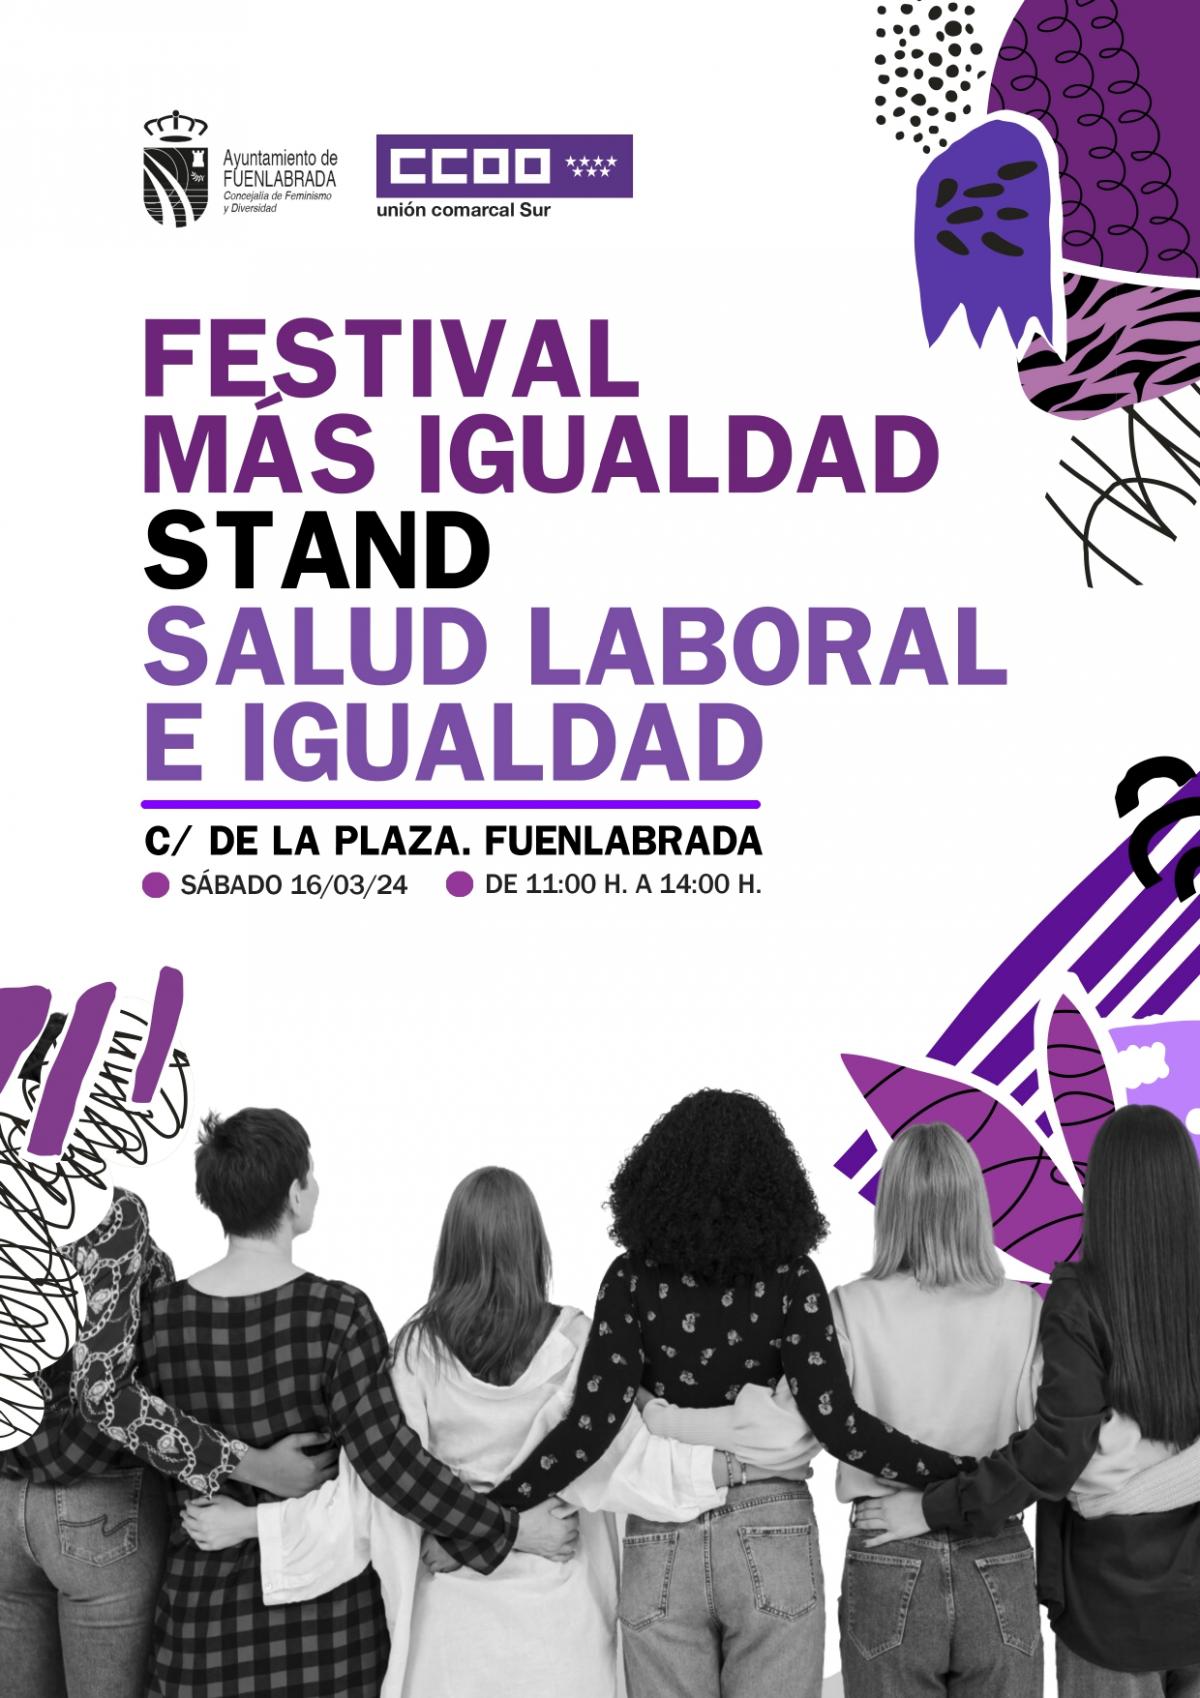 CCOO participa en el Festival Ms Igualdad, en Fuenlabrada